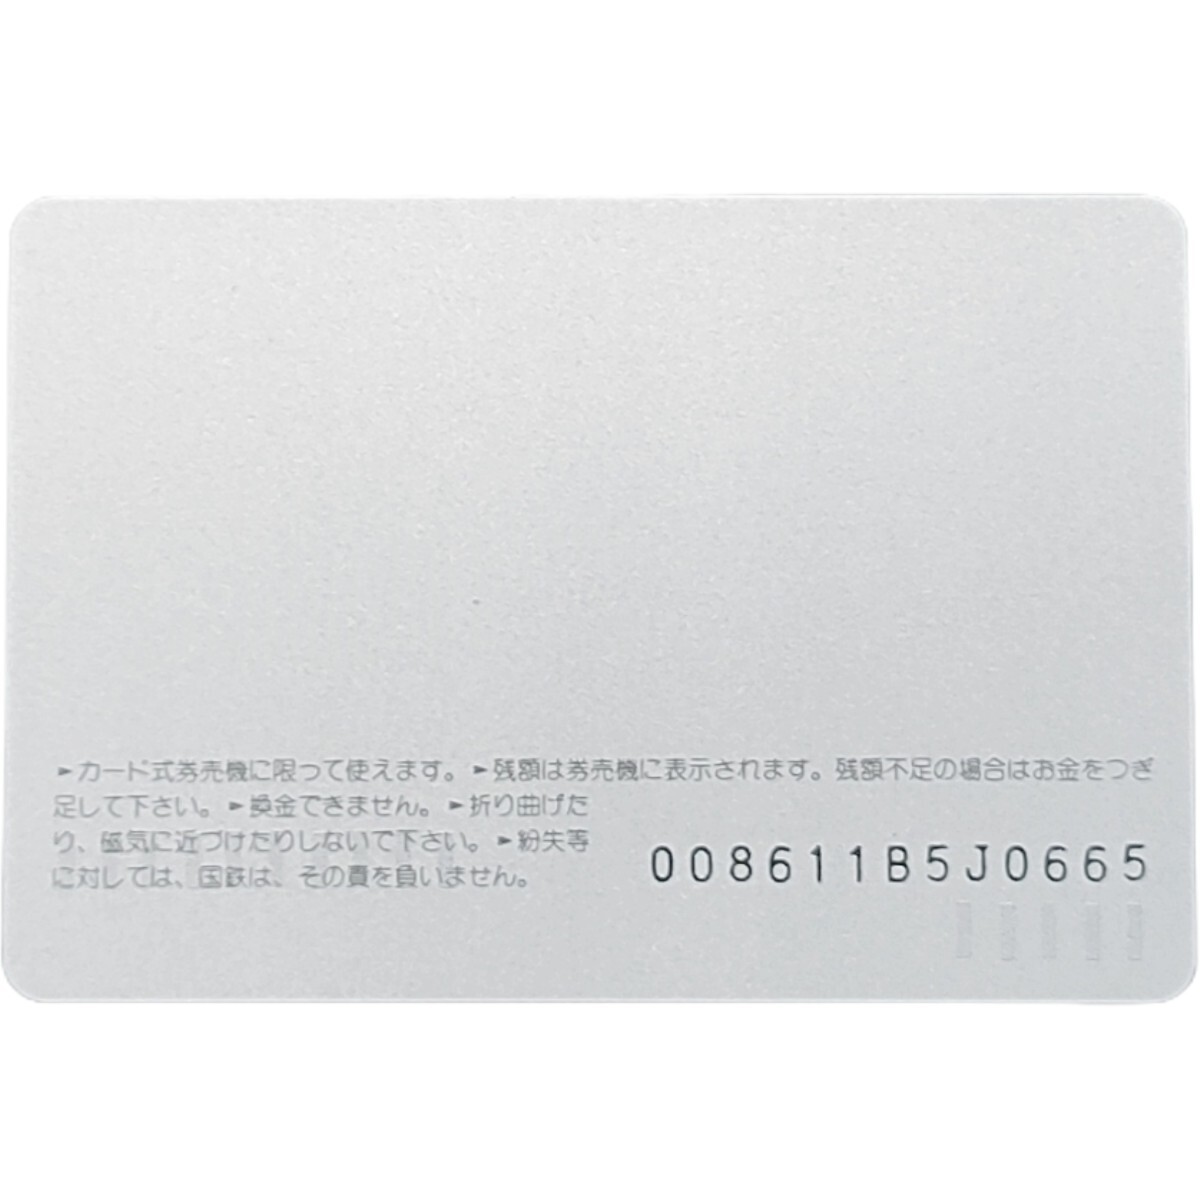 未使用 特急 北陸号 国鉄 オレカ1,000円 61.11 ダイヤ改正記念 オレンジカード の画像2